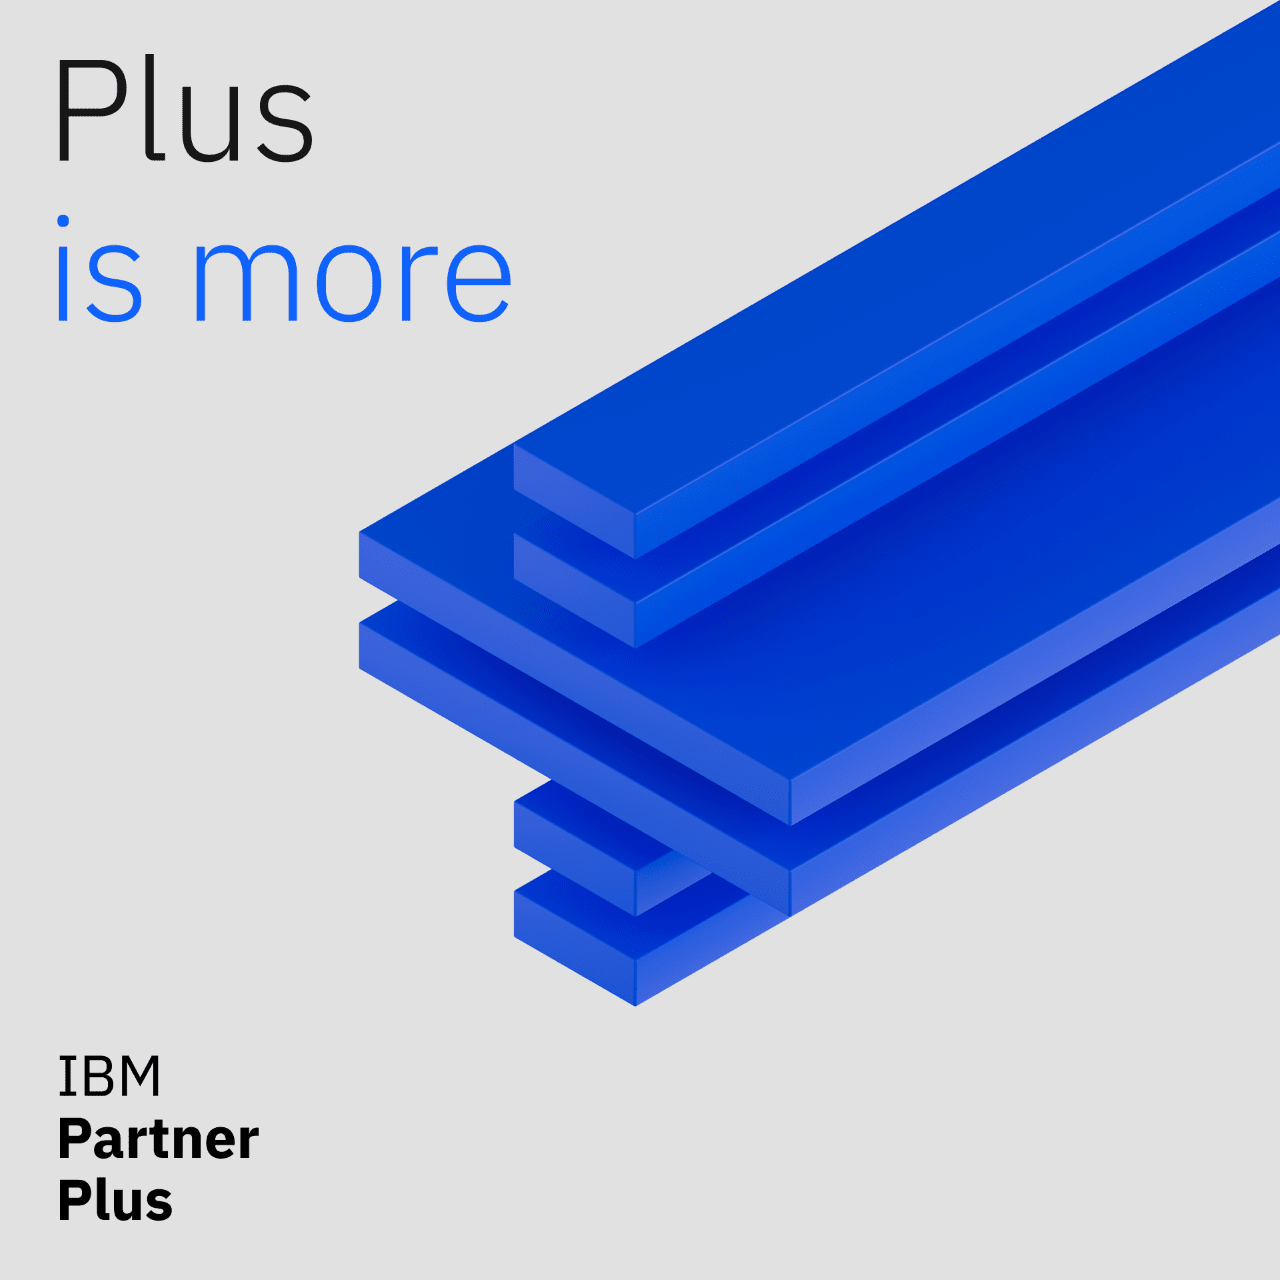 Recursos, incentivos, soporte personalizado y mucho más con el nuevo IBM Partner Plus